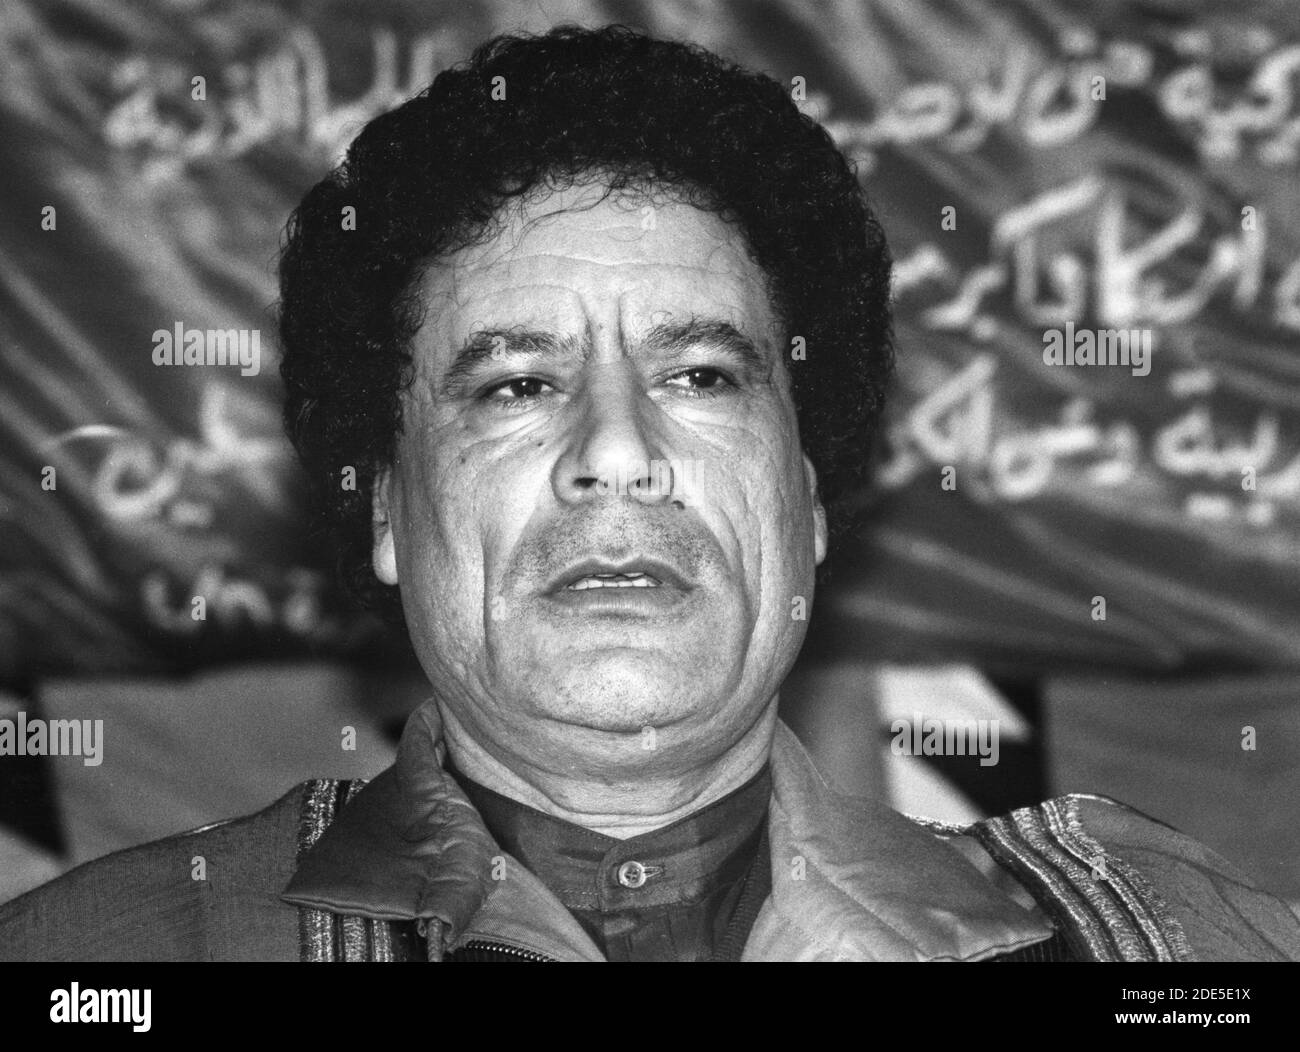 Tripoli, Libia, 1988 gennaio - il leader rivoluzionario libico Muammar al-Gheddafi nel gennaio 1988 in una tenda di visitatori alla periferia di Tripoli, Libia Foto Stock